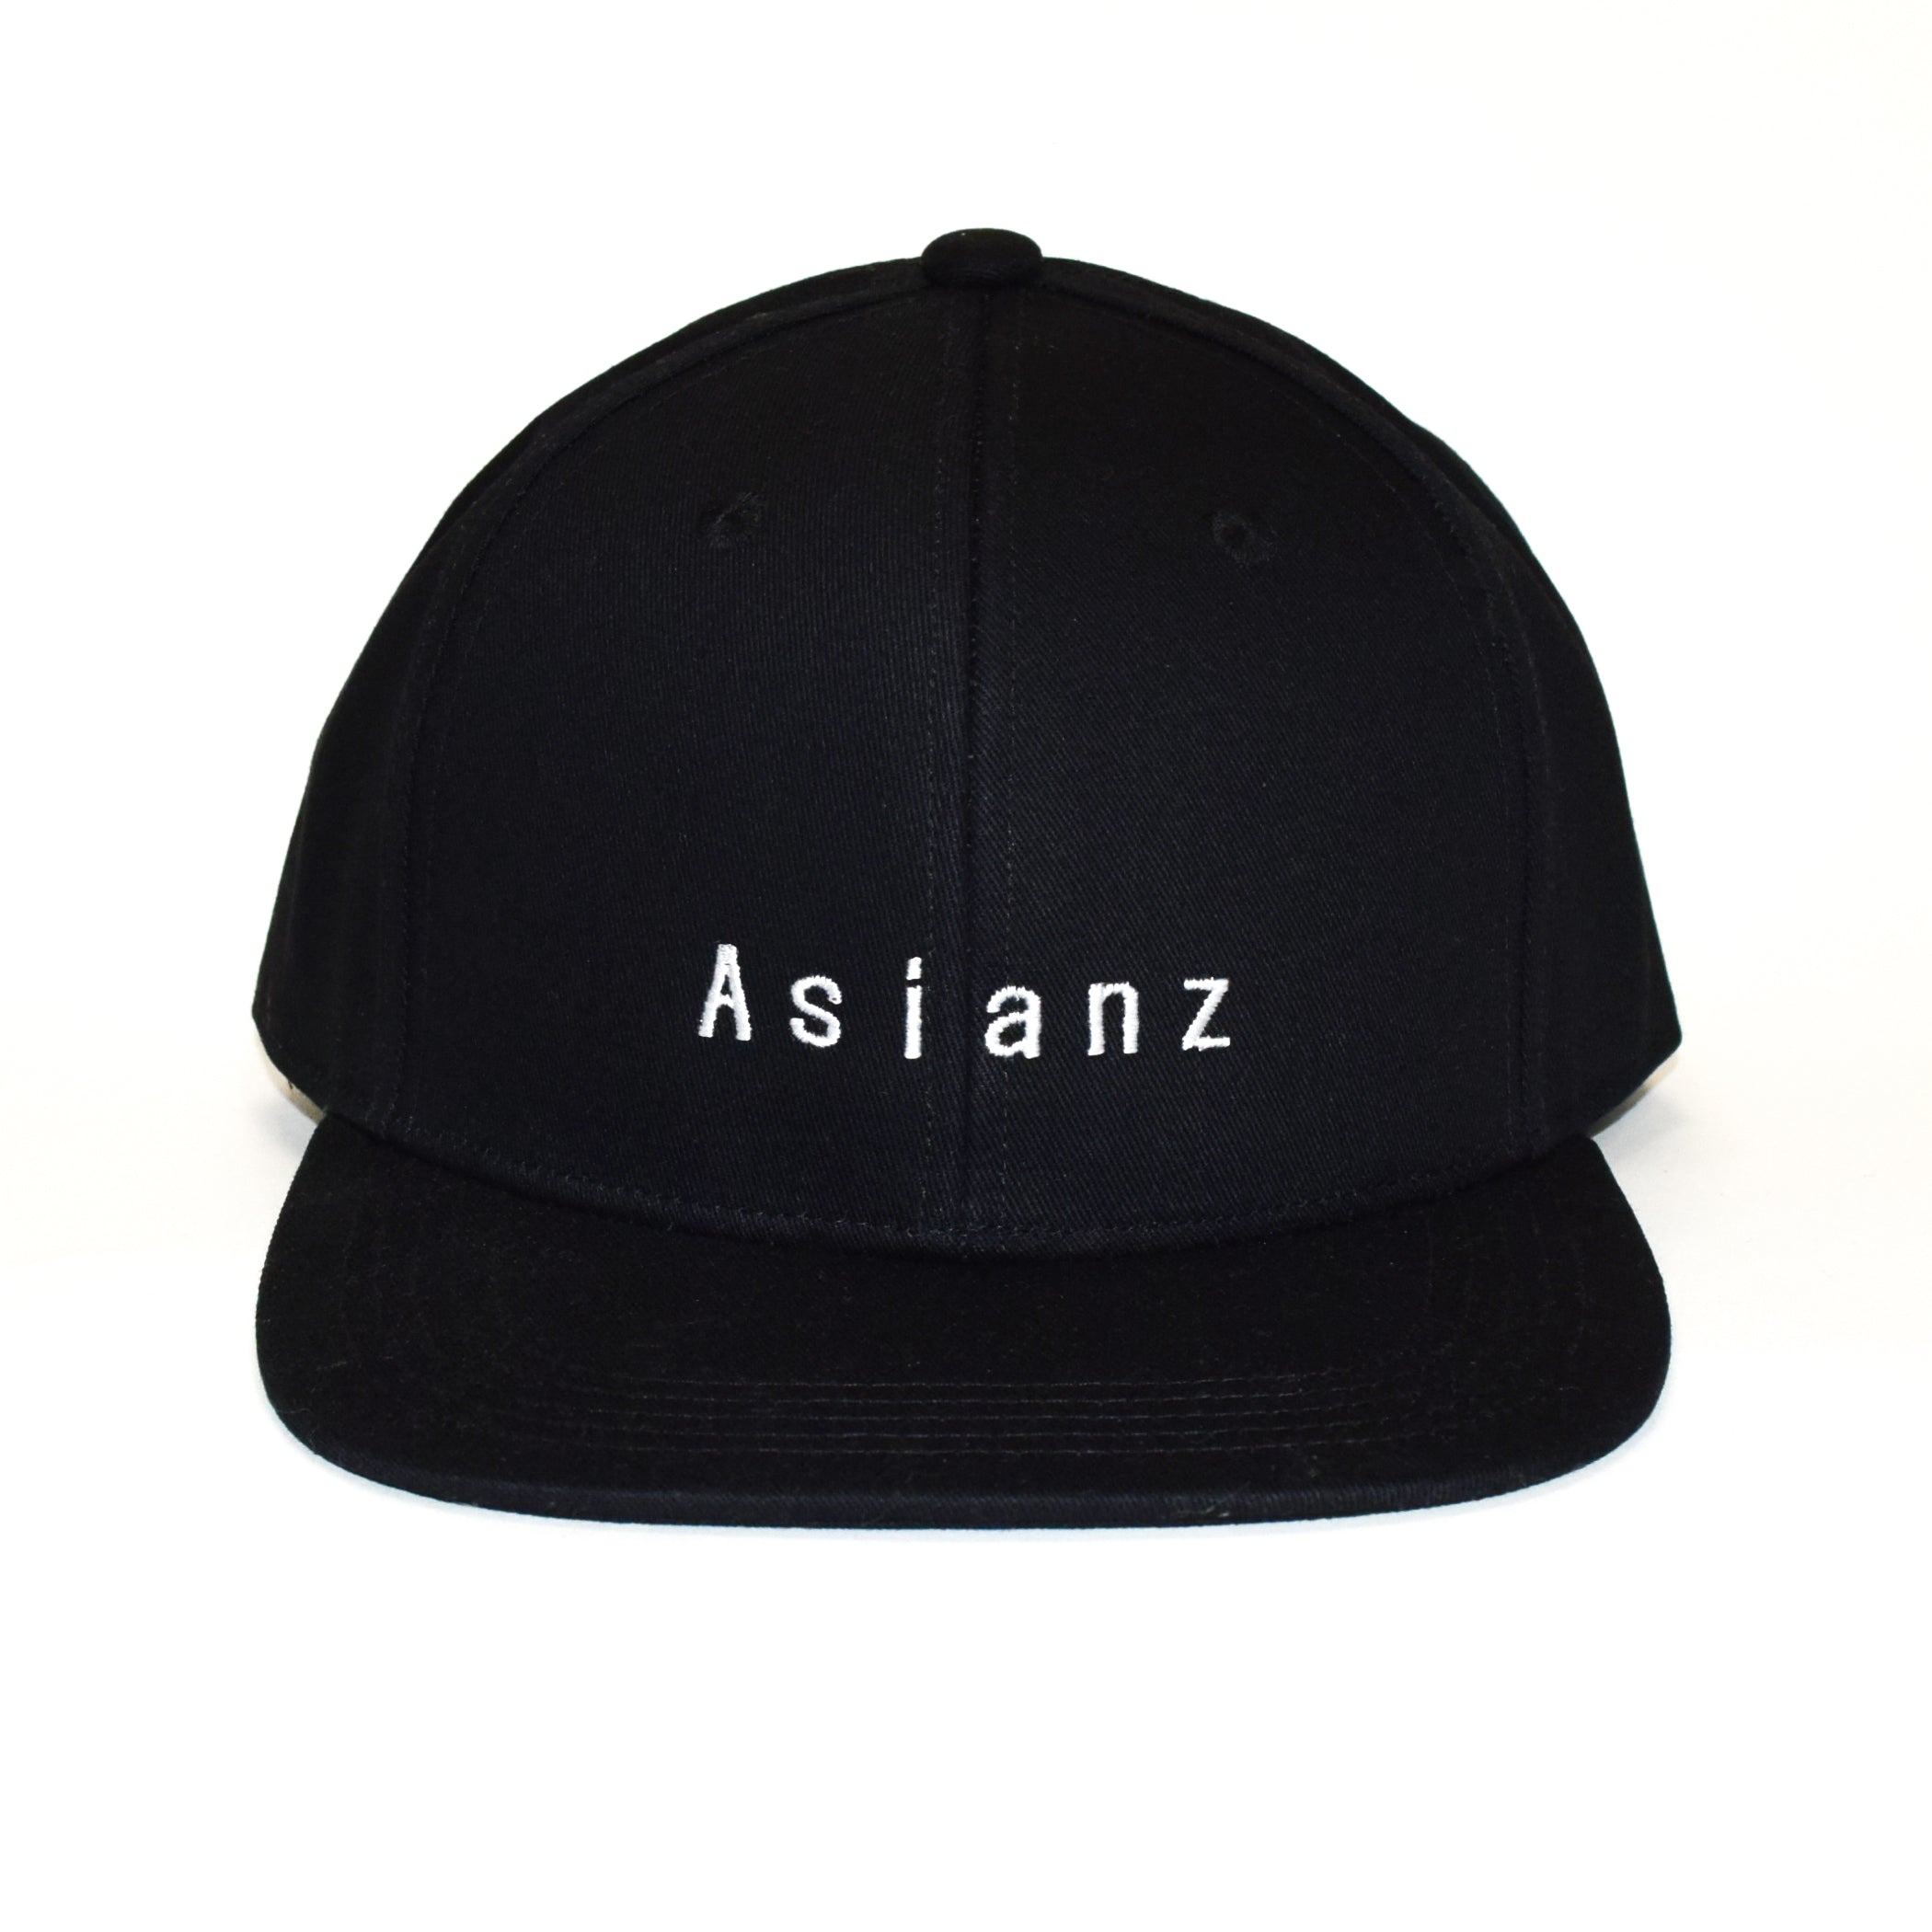 (セール商品) ASIANZ Logo 6パネル スナップバック キャップ